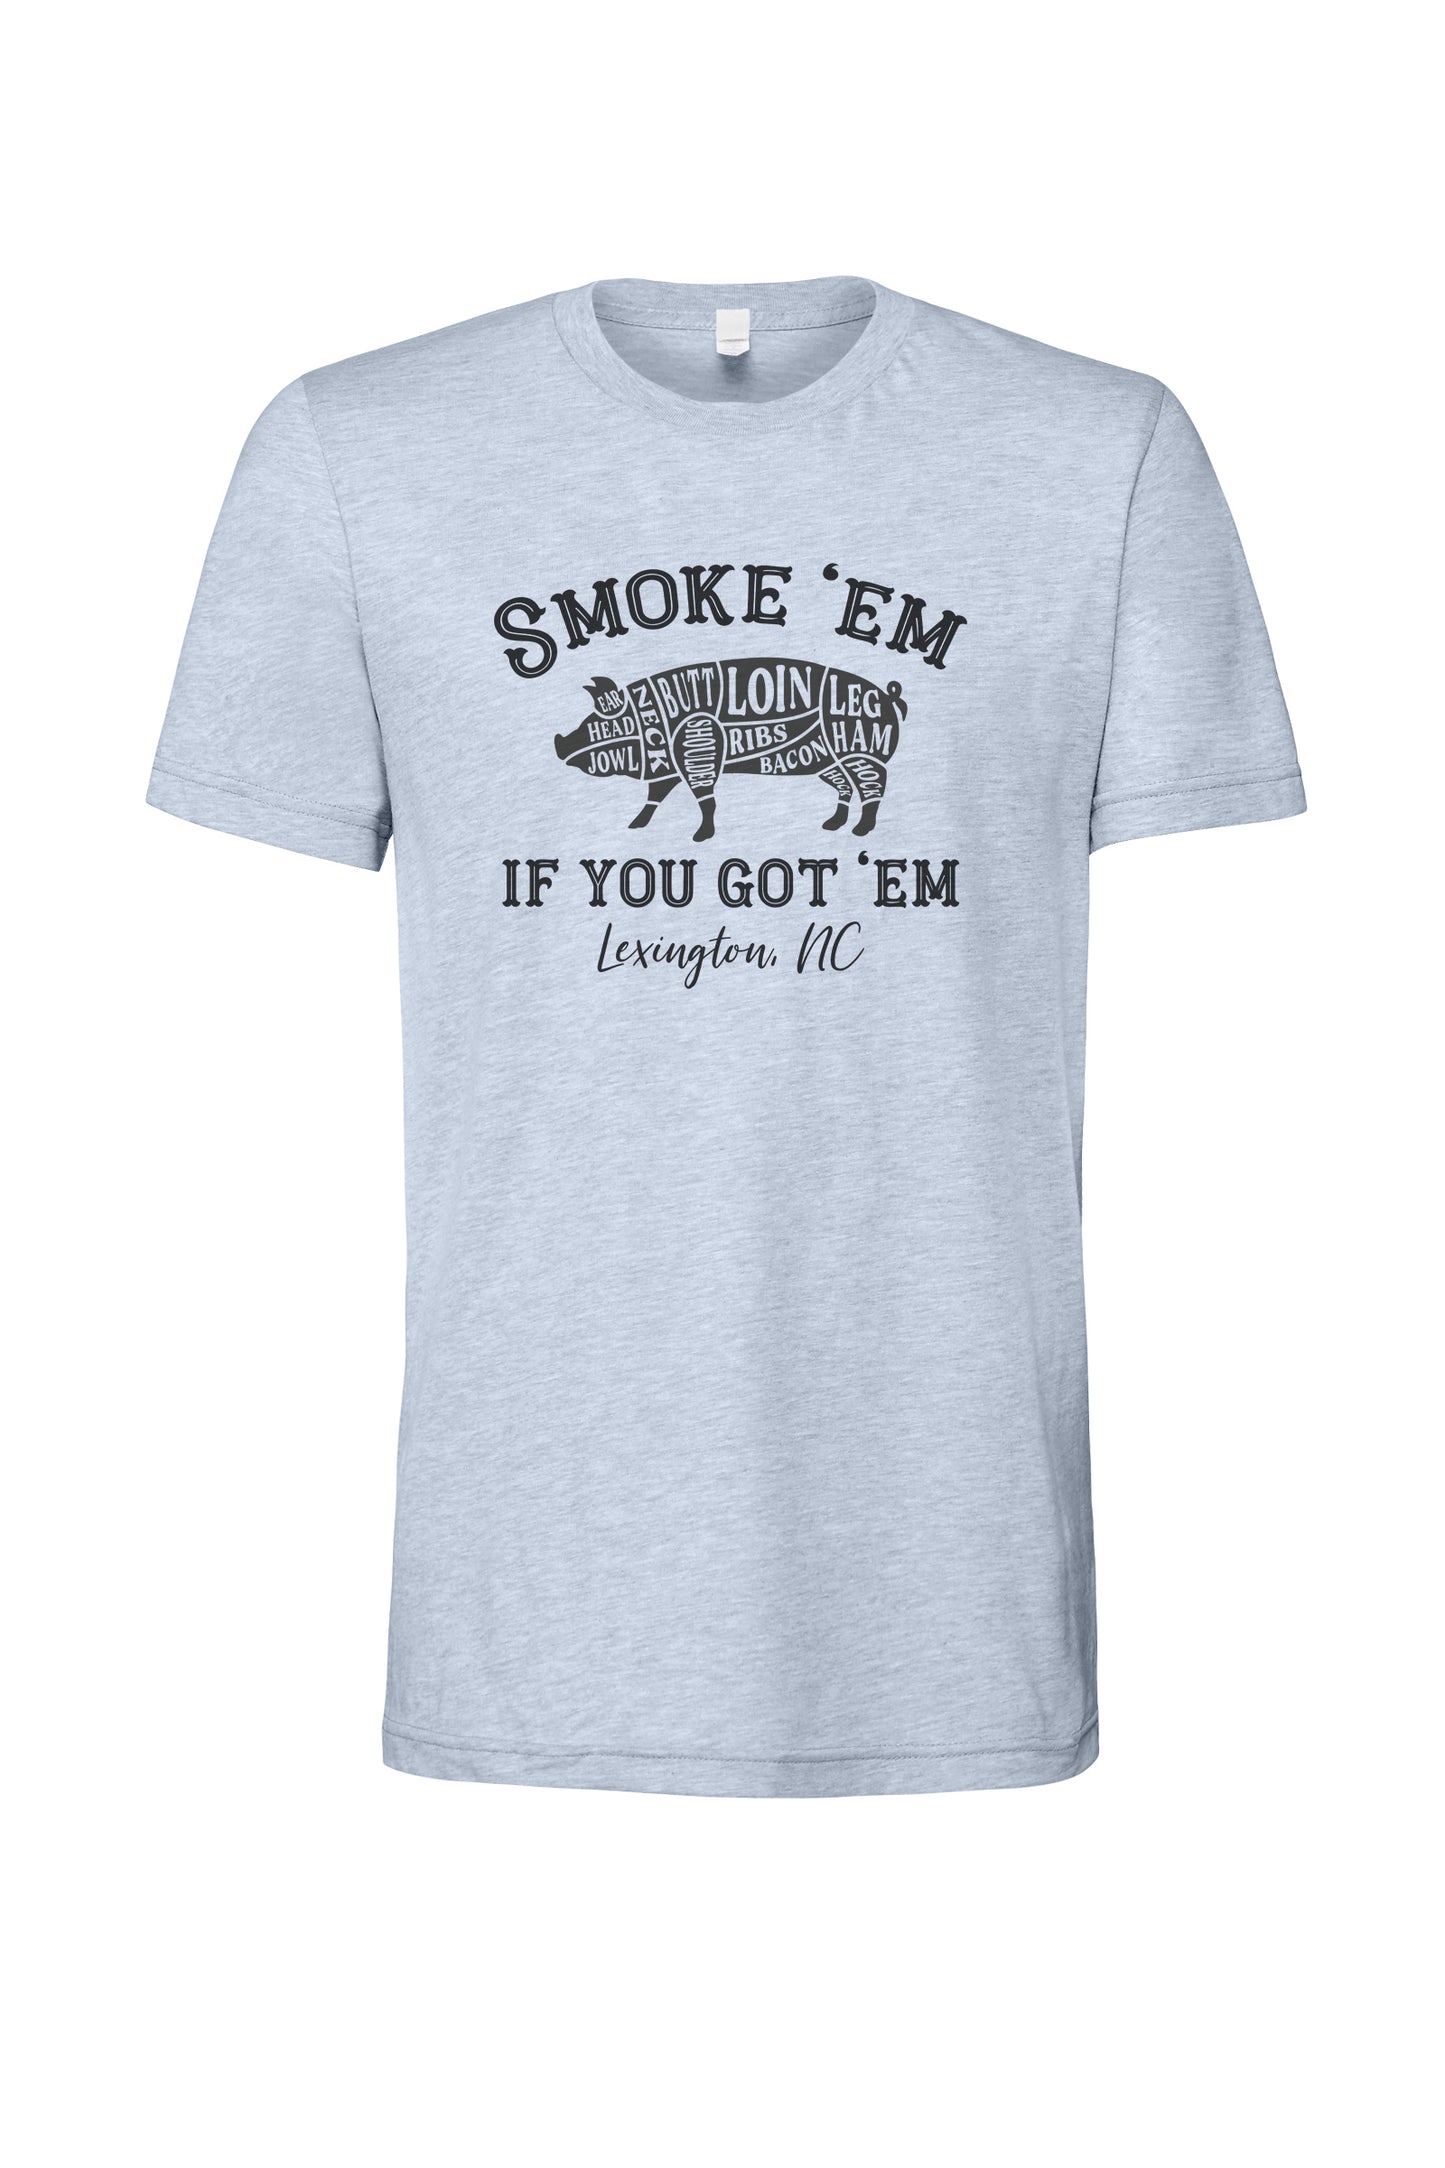 Smoke 'em if you got 'em tee shirt